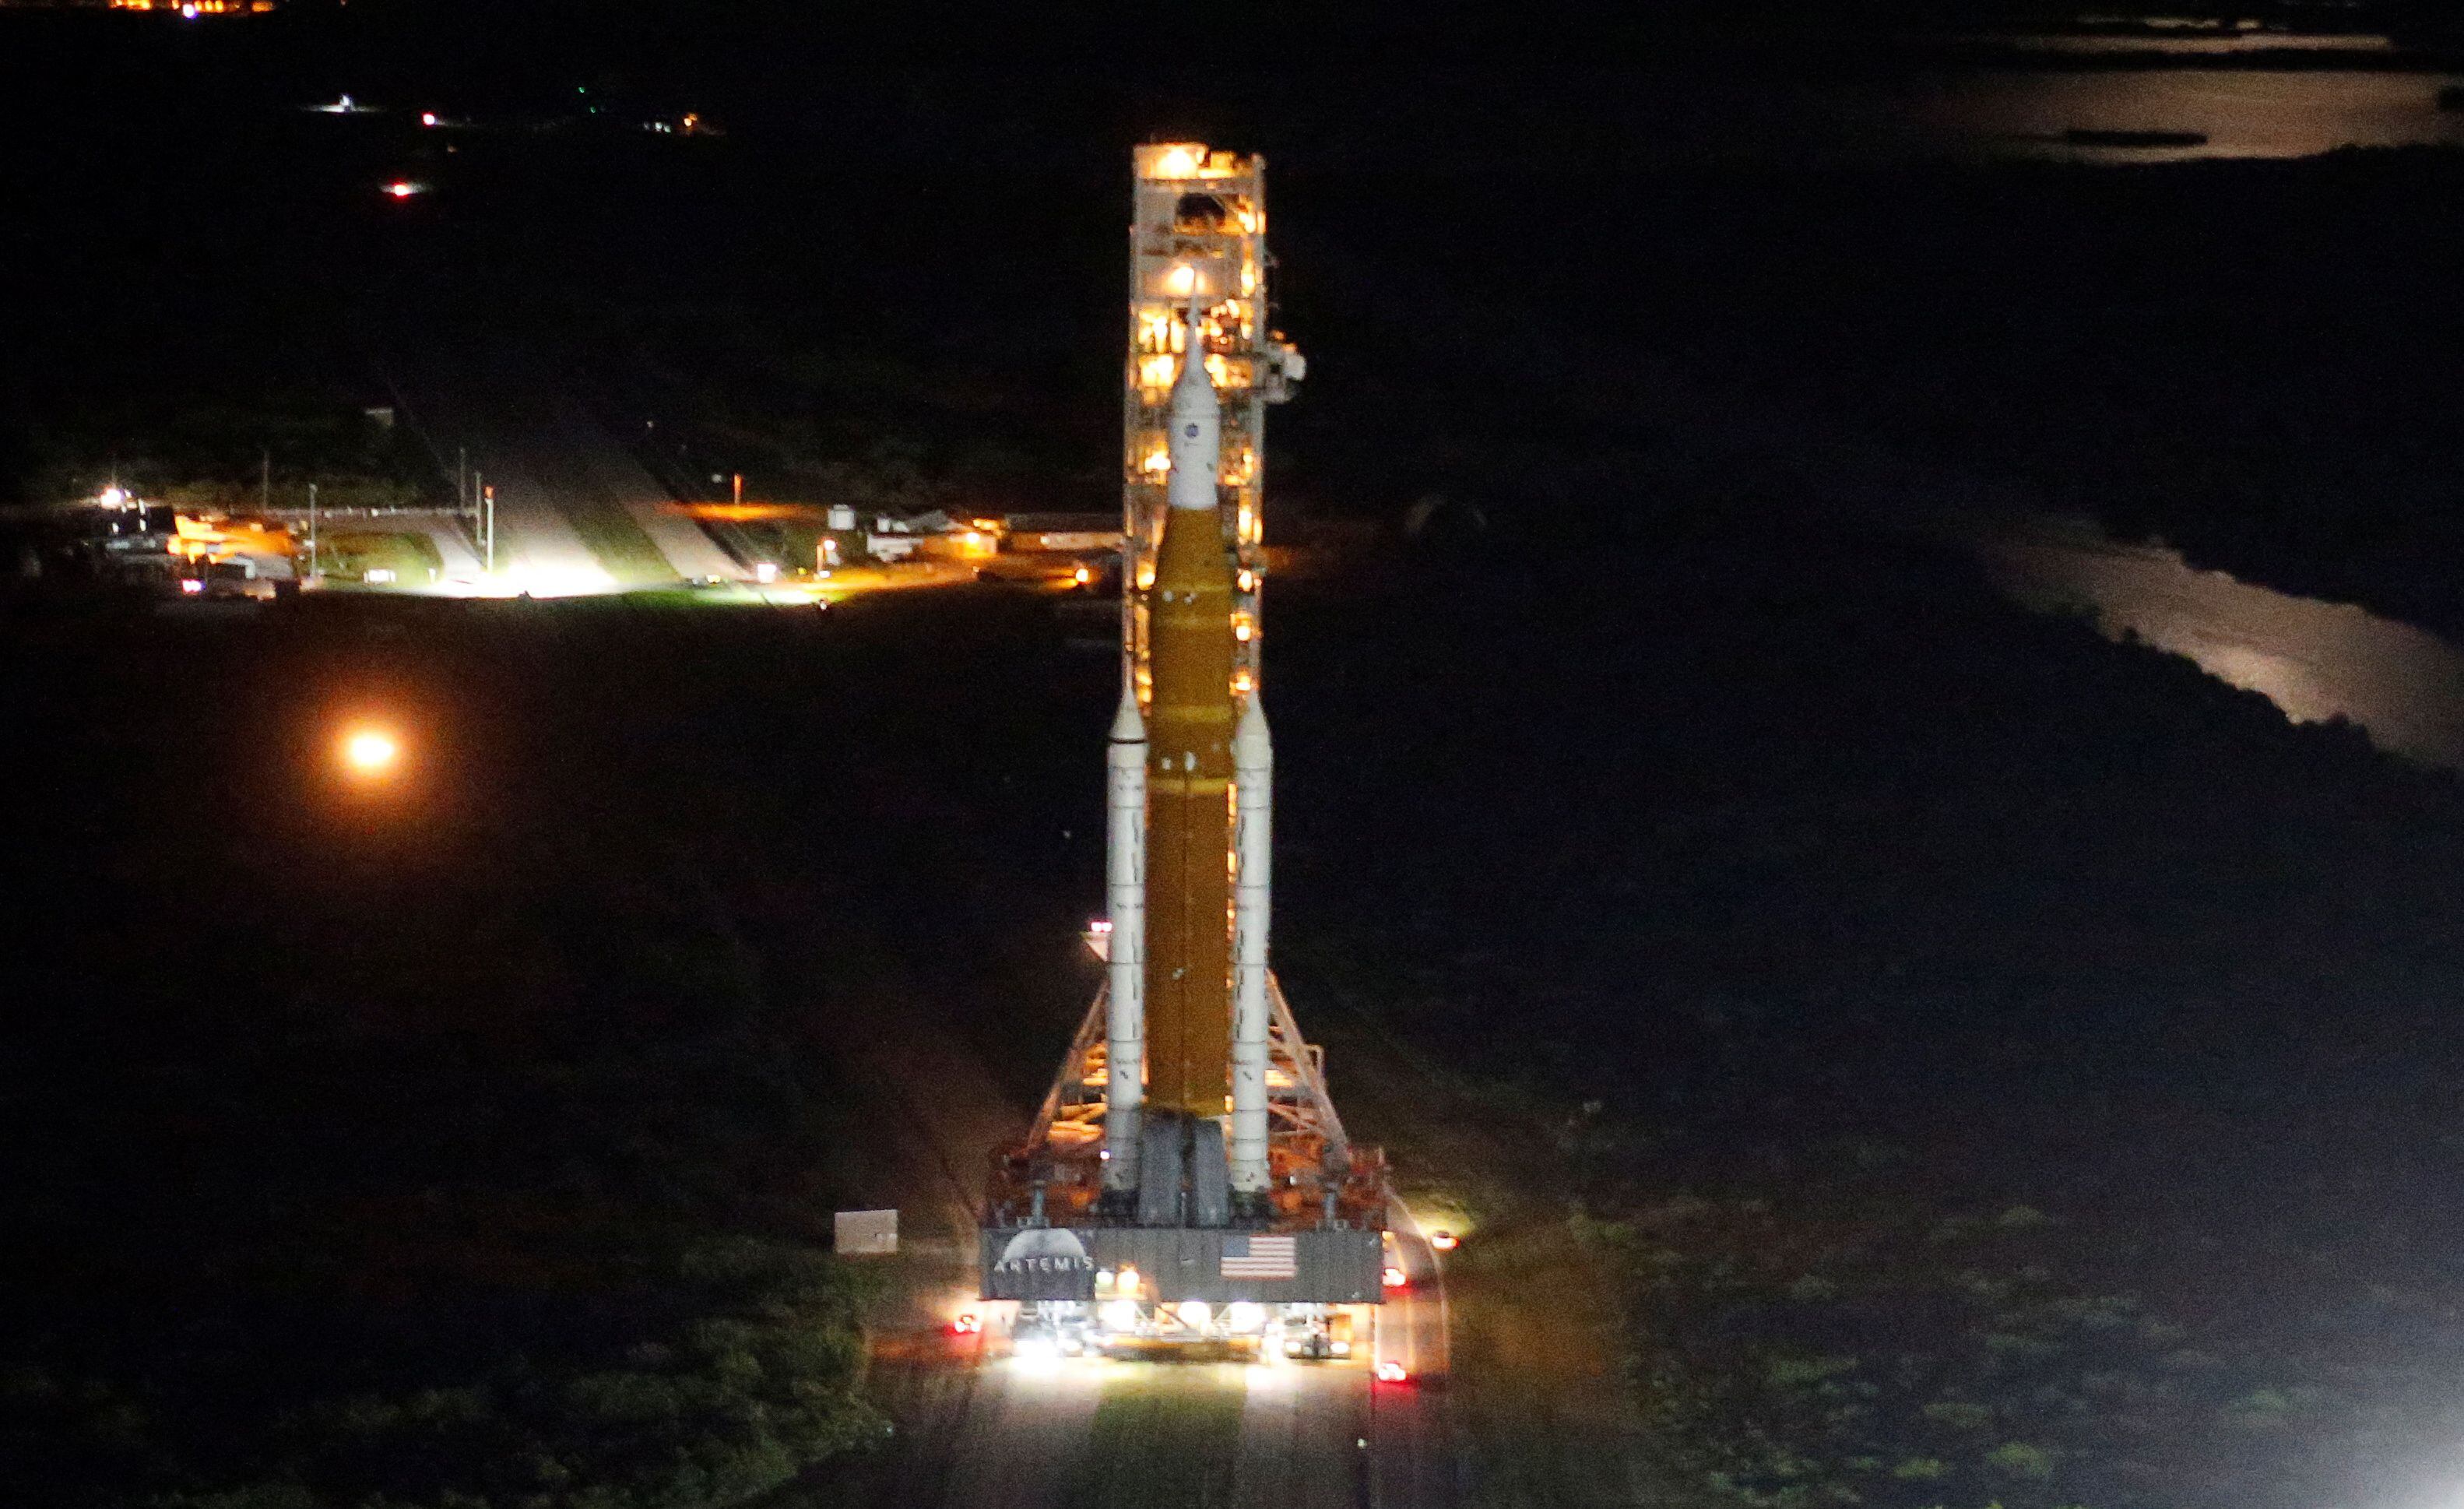 El cohete SLS, cargado con la nave Orion, desplegado en Cabo Cañaveral pendiente de su lanzamiento el 29 de agosto, dentro de la misión Artemis I.